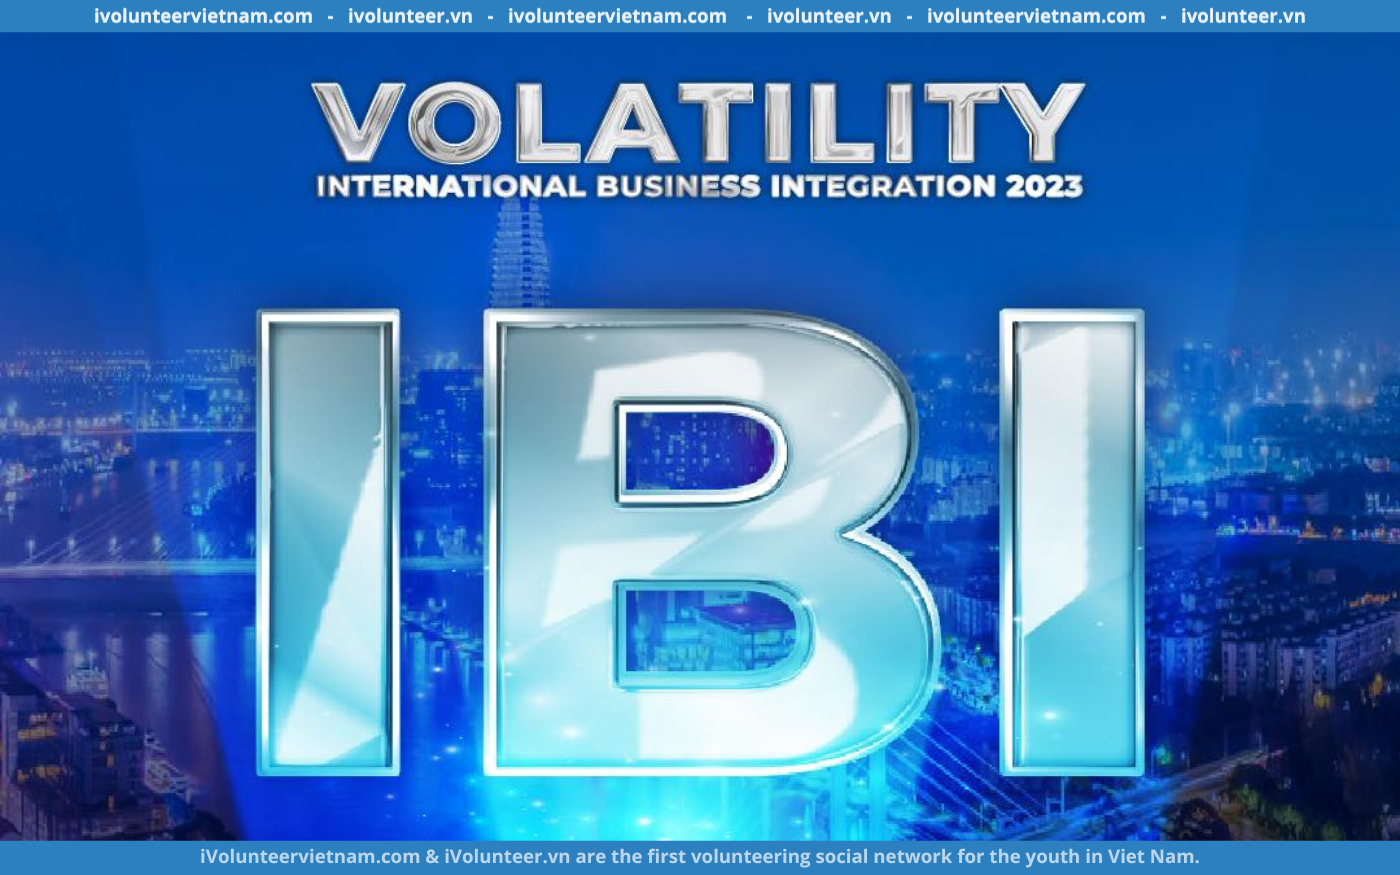 Cuộc Thi “International Business Integration 2023: Volatility – Sự Biến Động Kinh Tế” Mở Đơn Đăng Ký